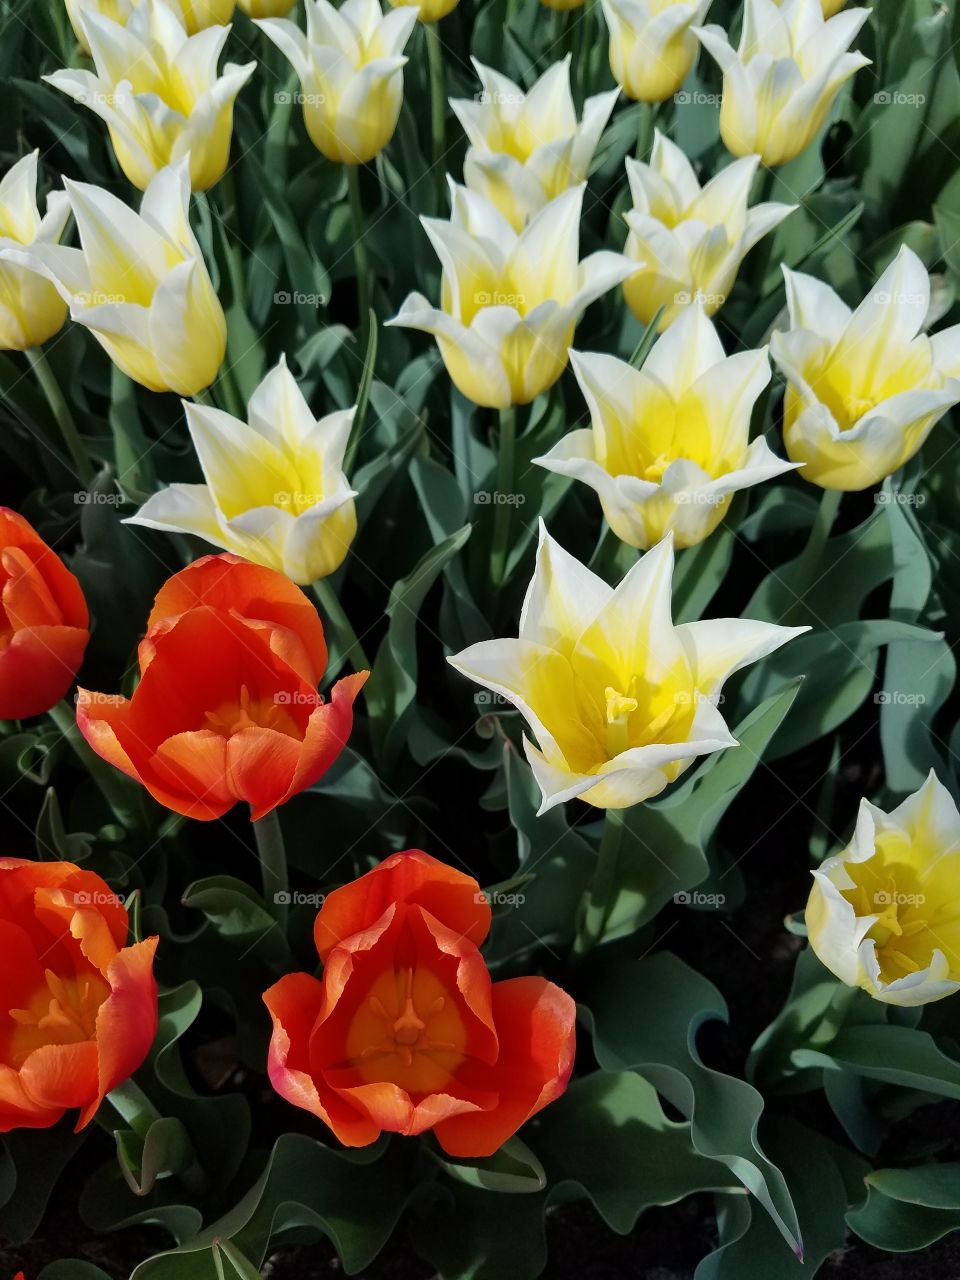 Washington Park Tulips